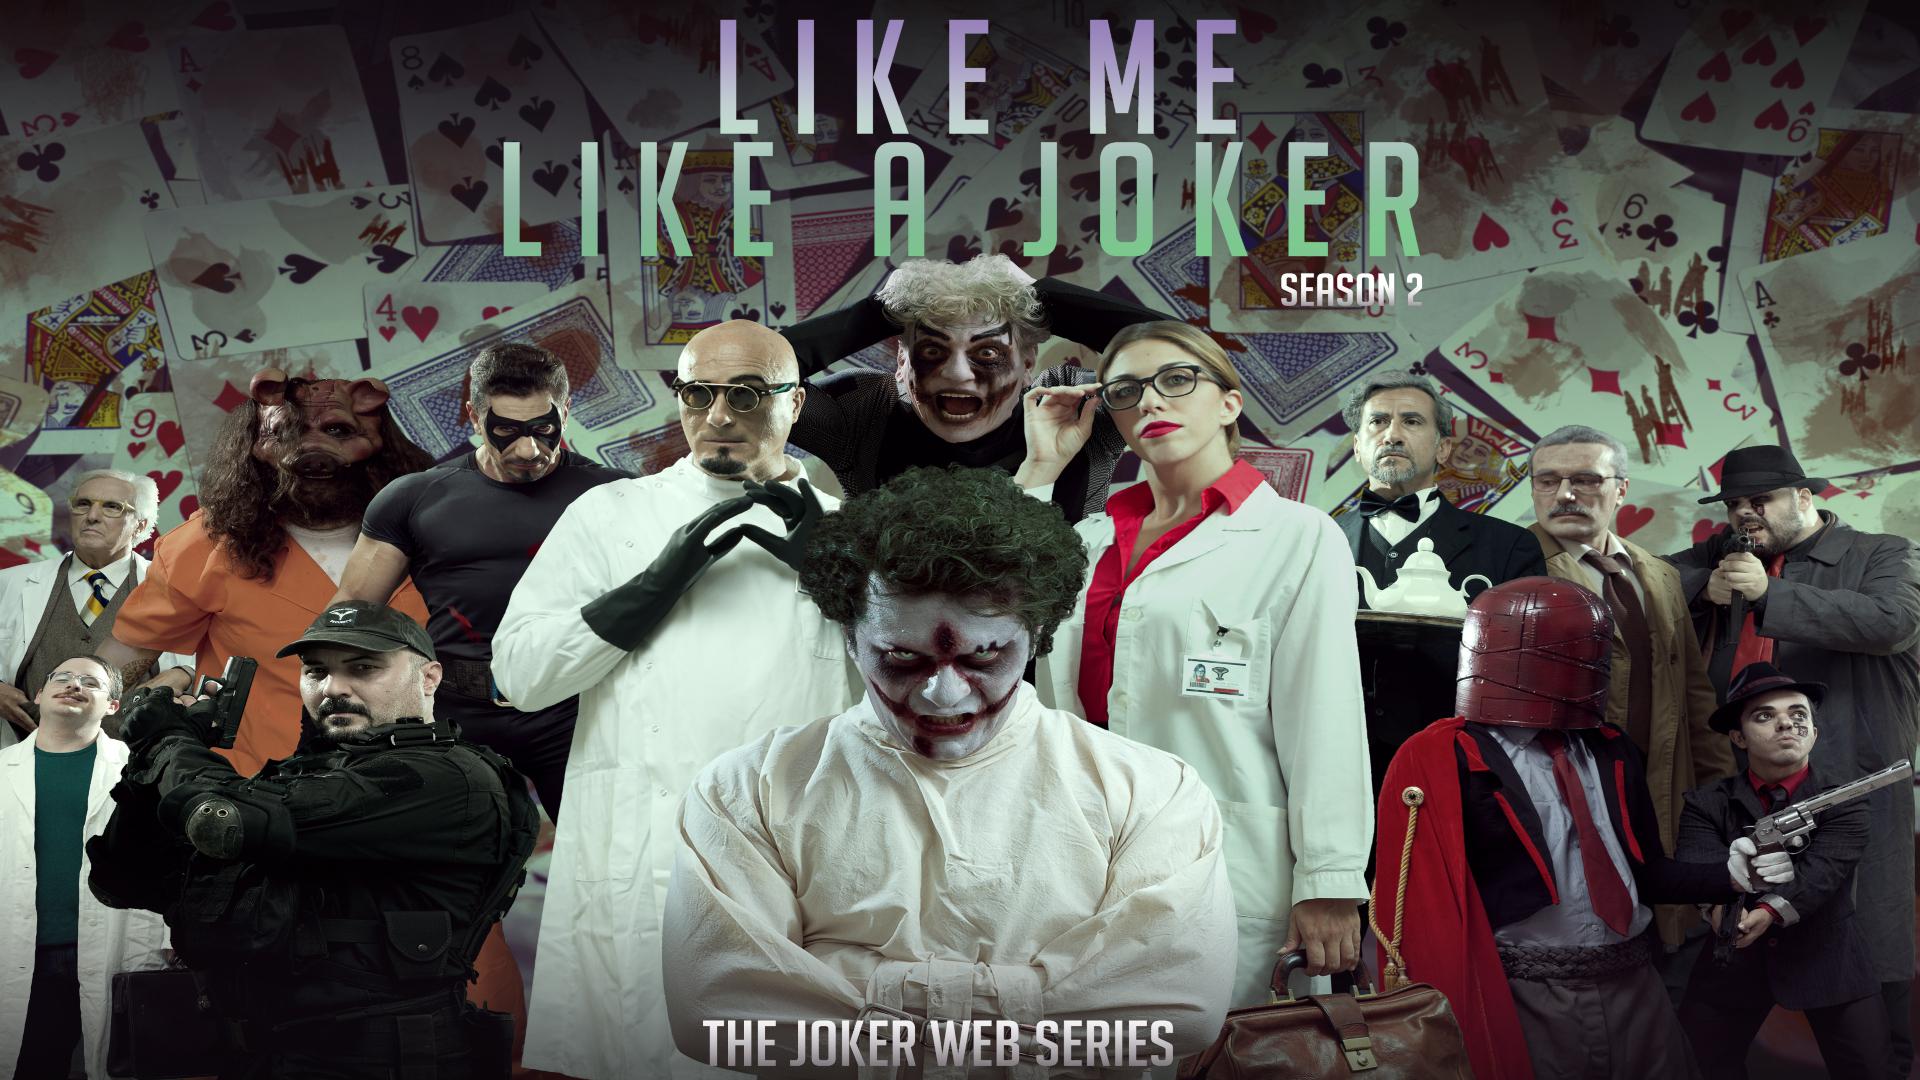 Like Me, Like a Joker